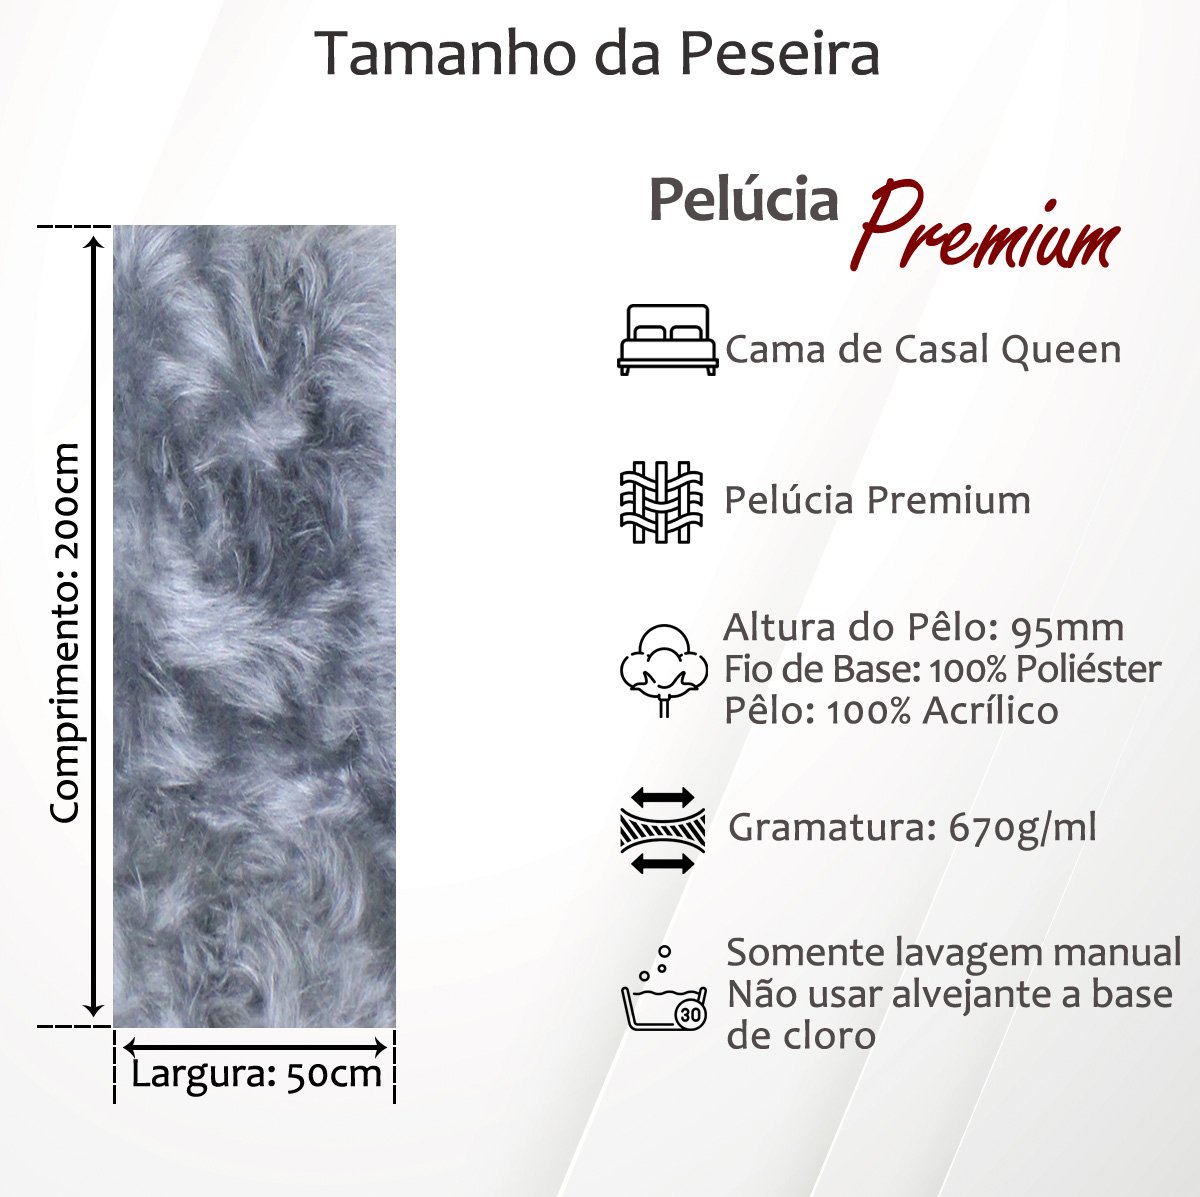 Peseira Premium Pelúcia Pelo Alto Cama Casal Queen Size 2mx50cm + 2 Capas de Almofadas Pelúcia Premi - 4